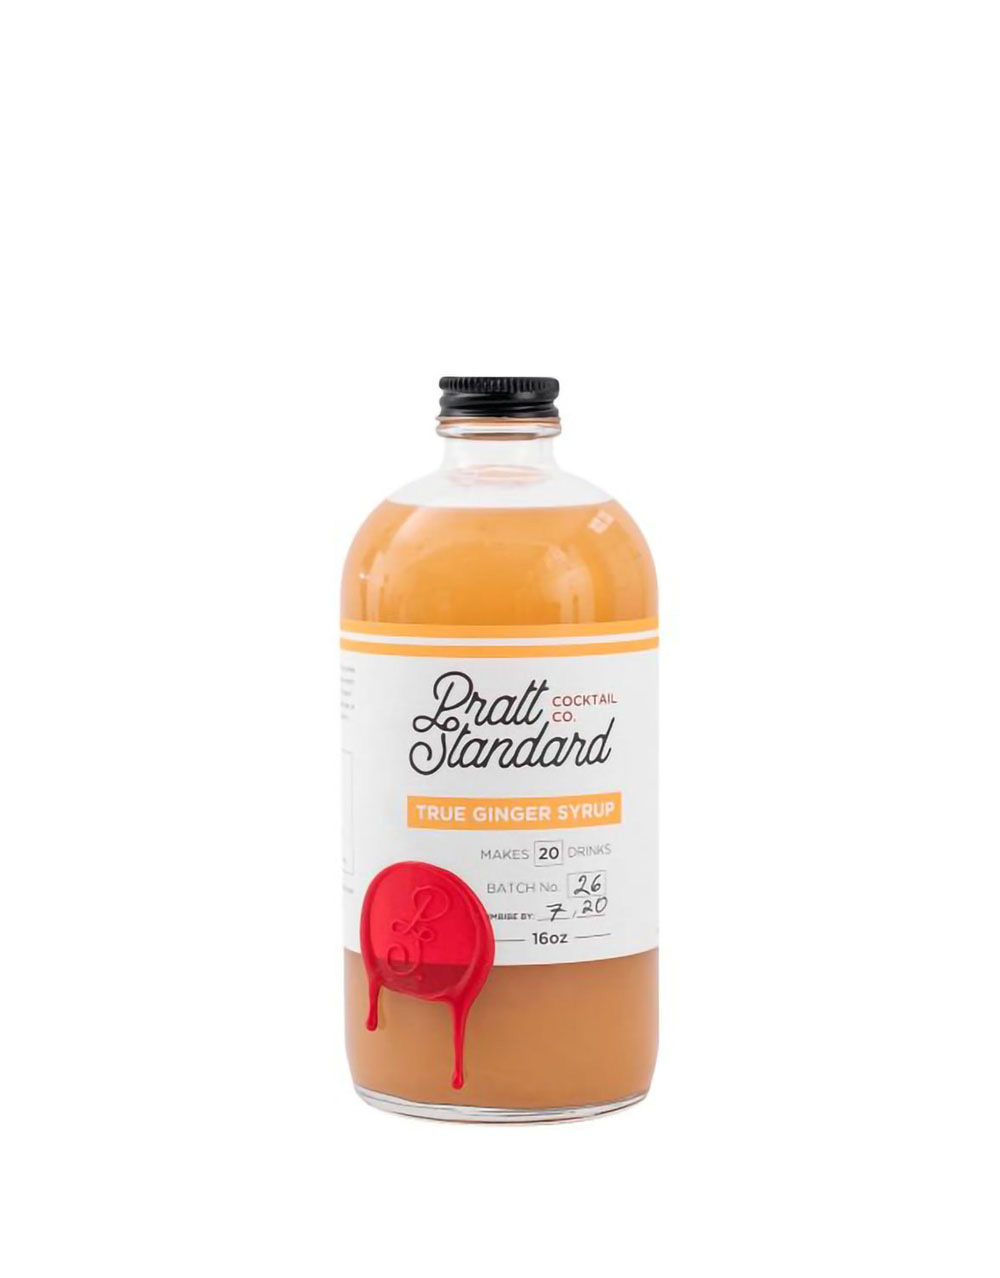 Pratt Standard True Ginger Syrup